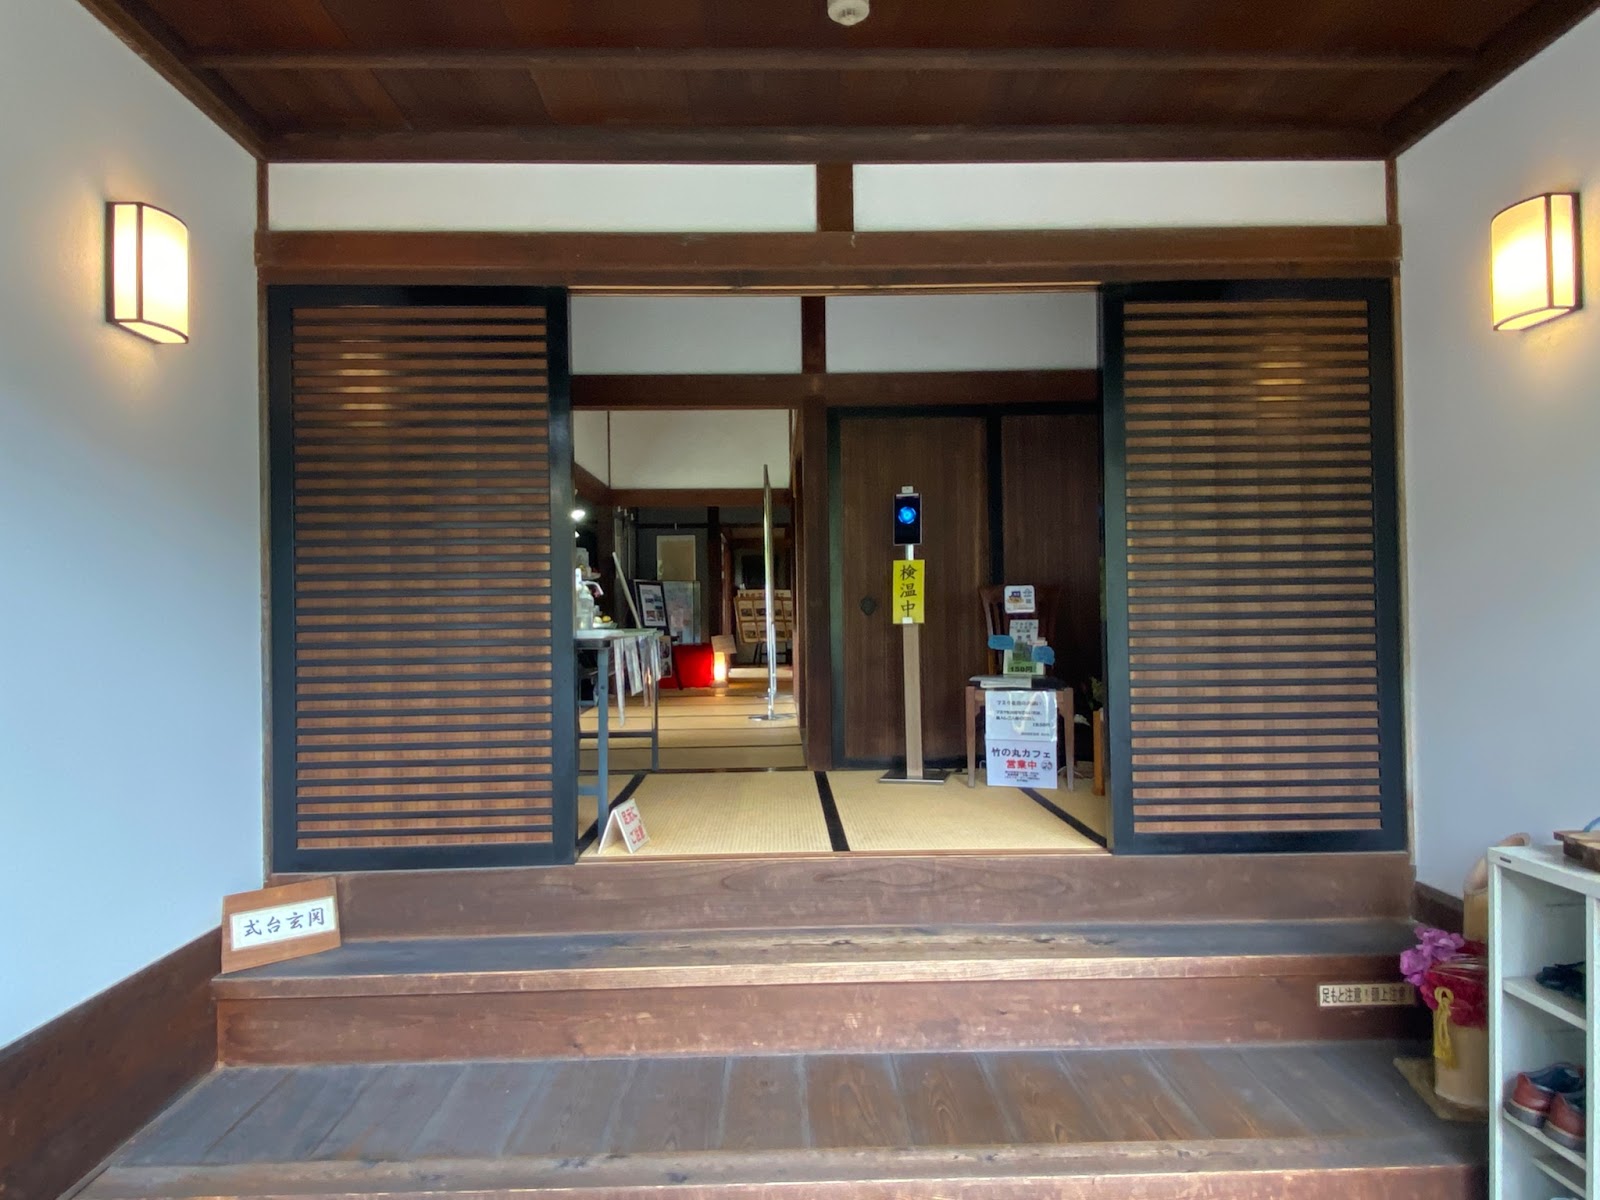 「竹の丸スイーツカフェ」の内装